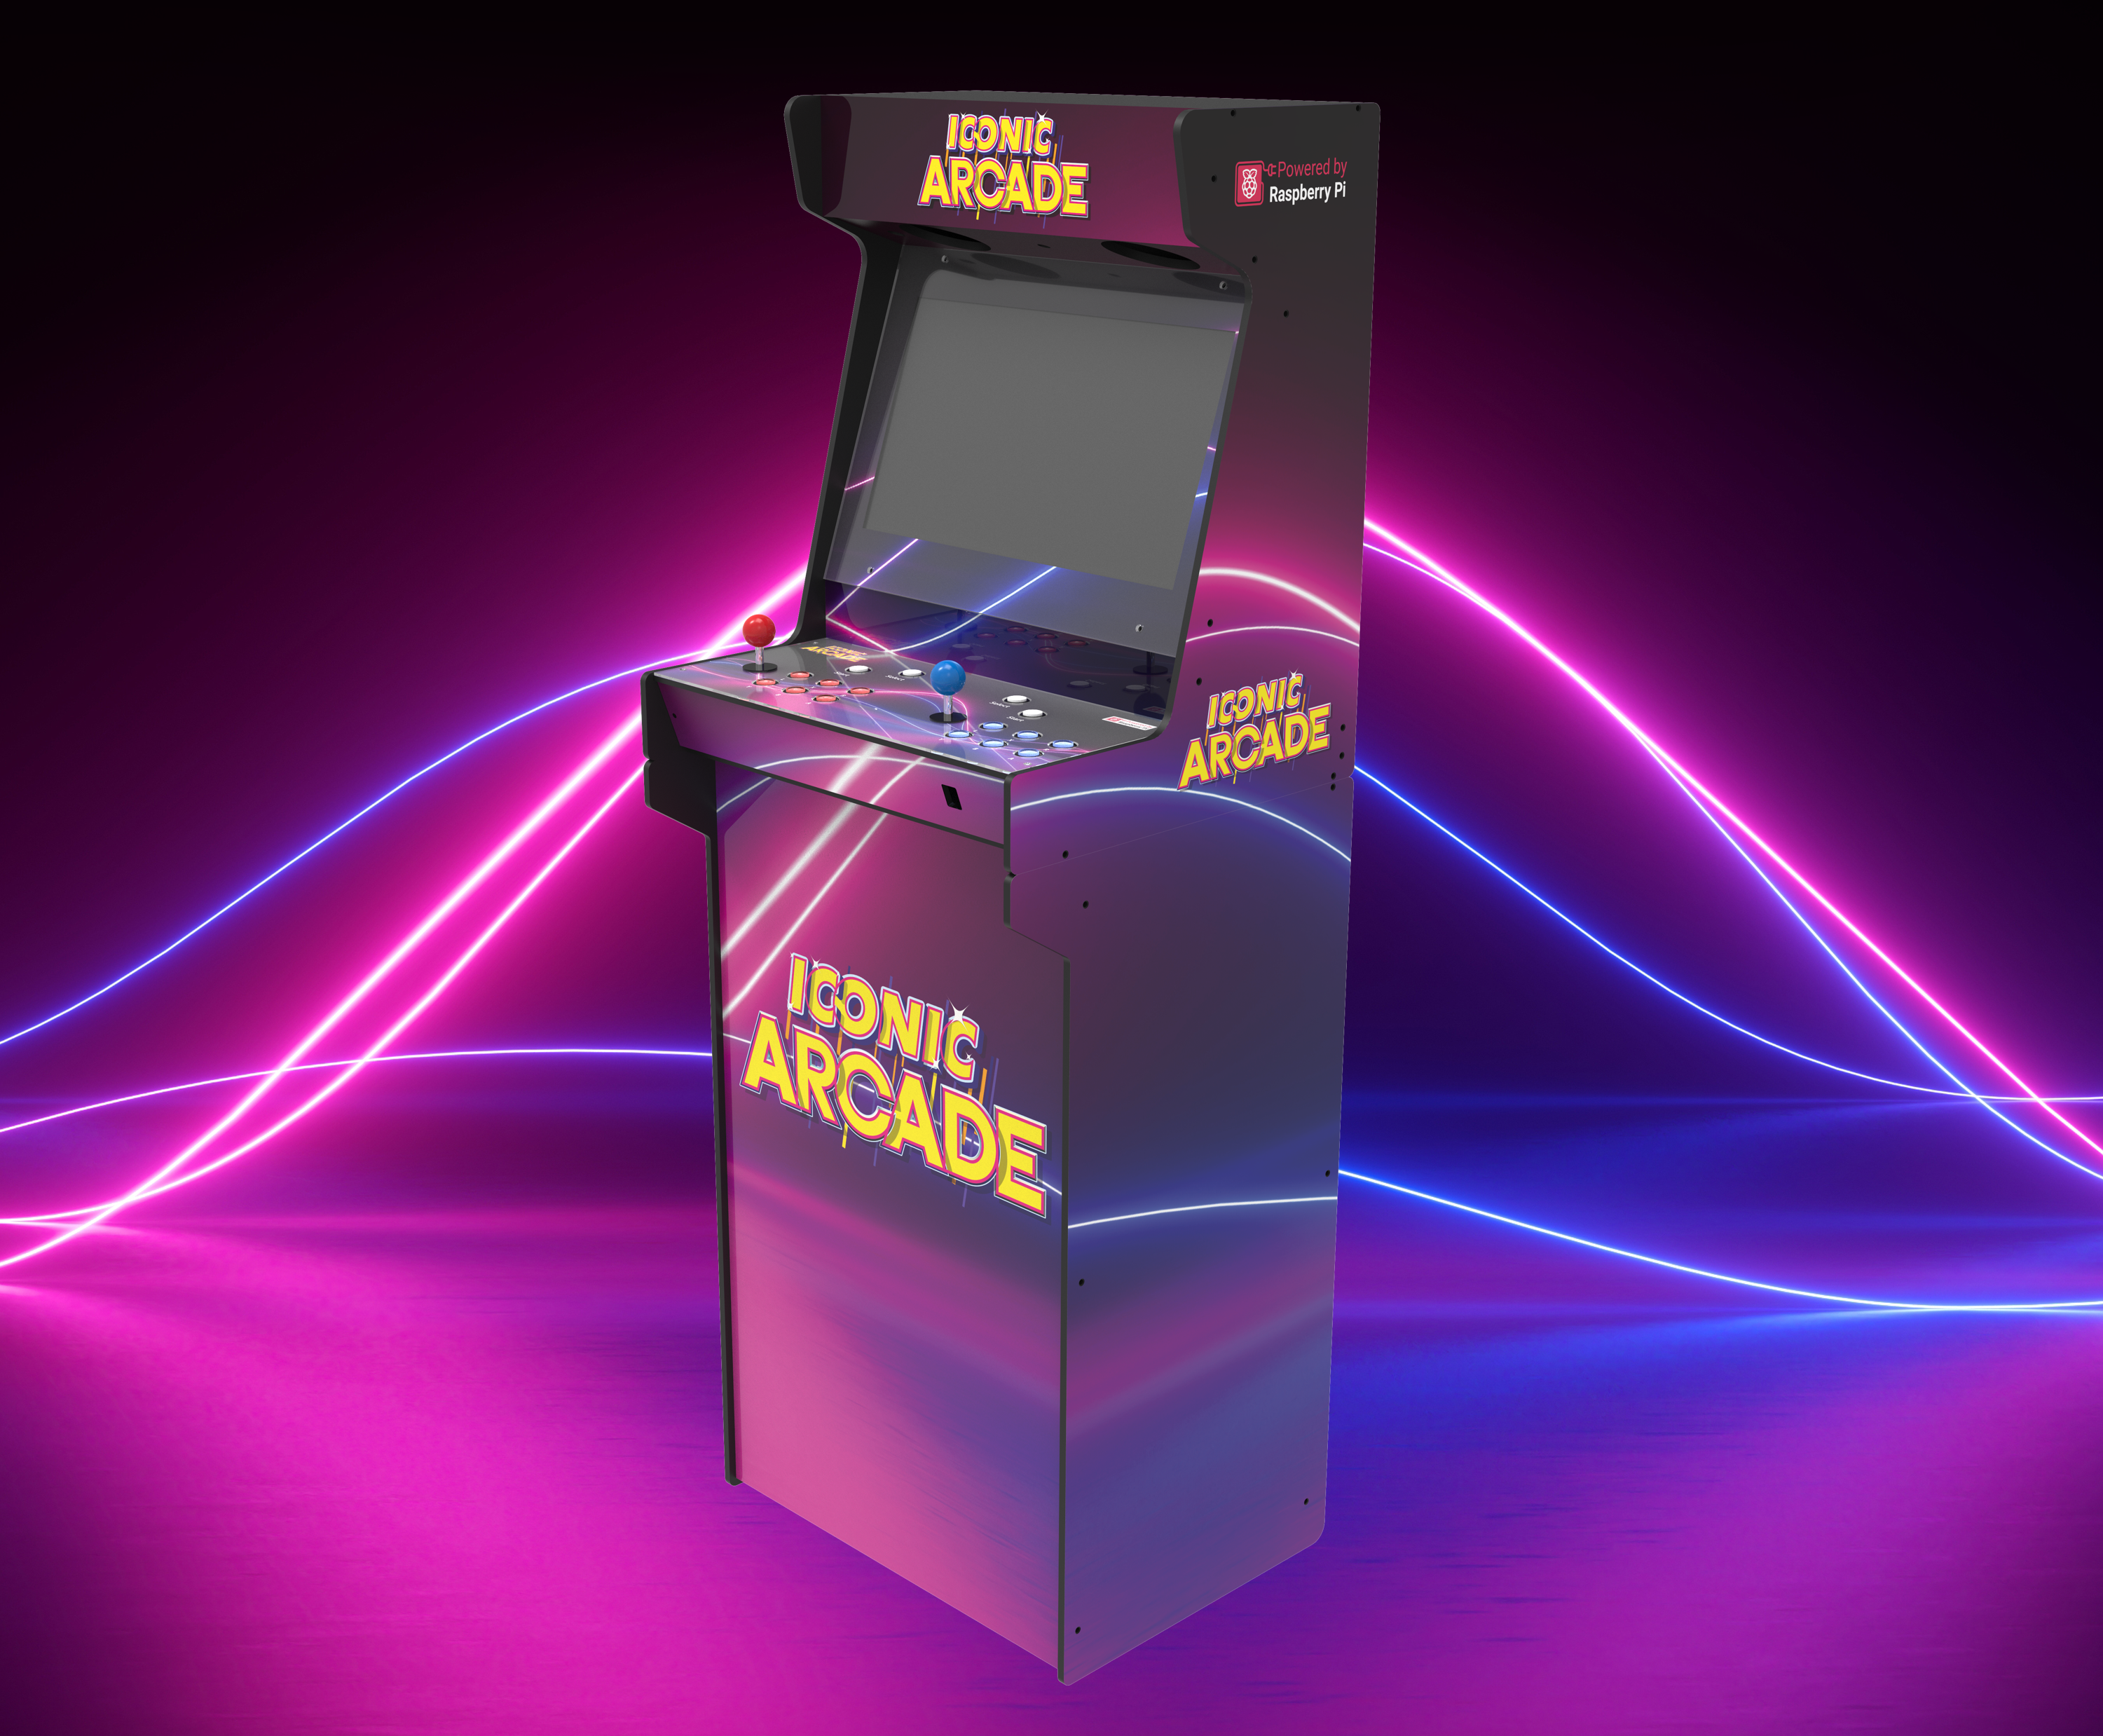 medion arcade